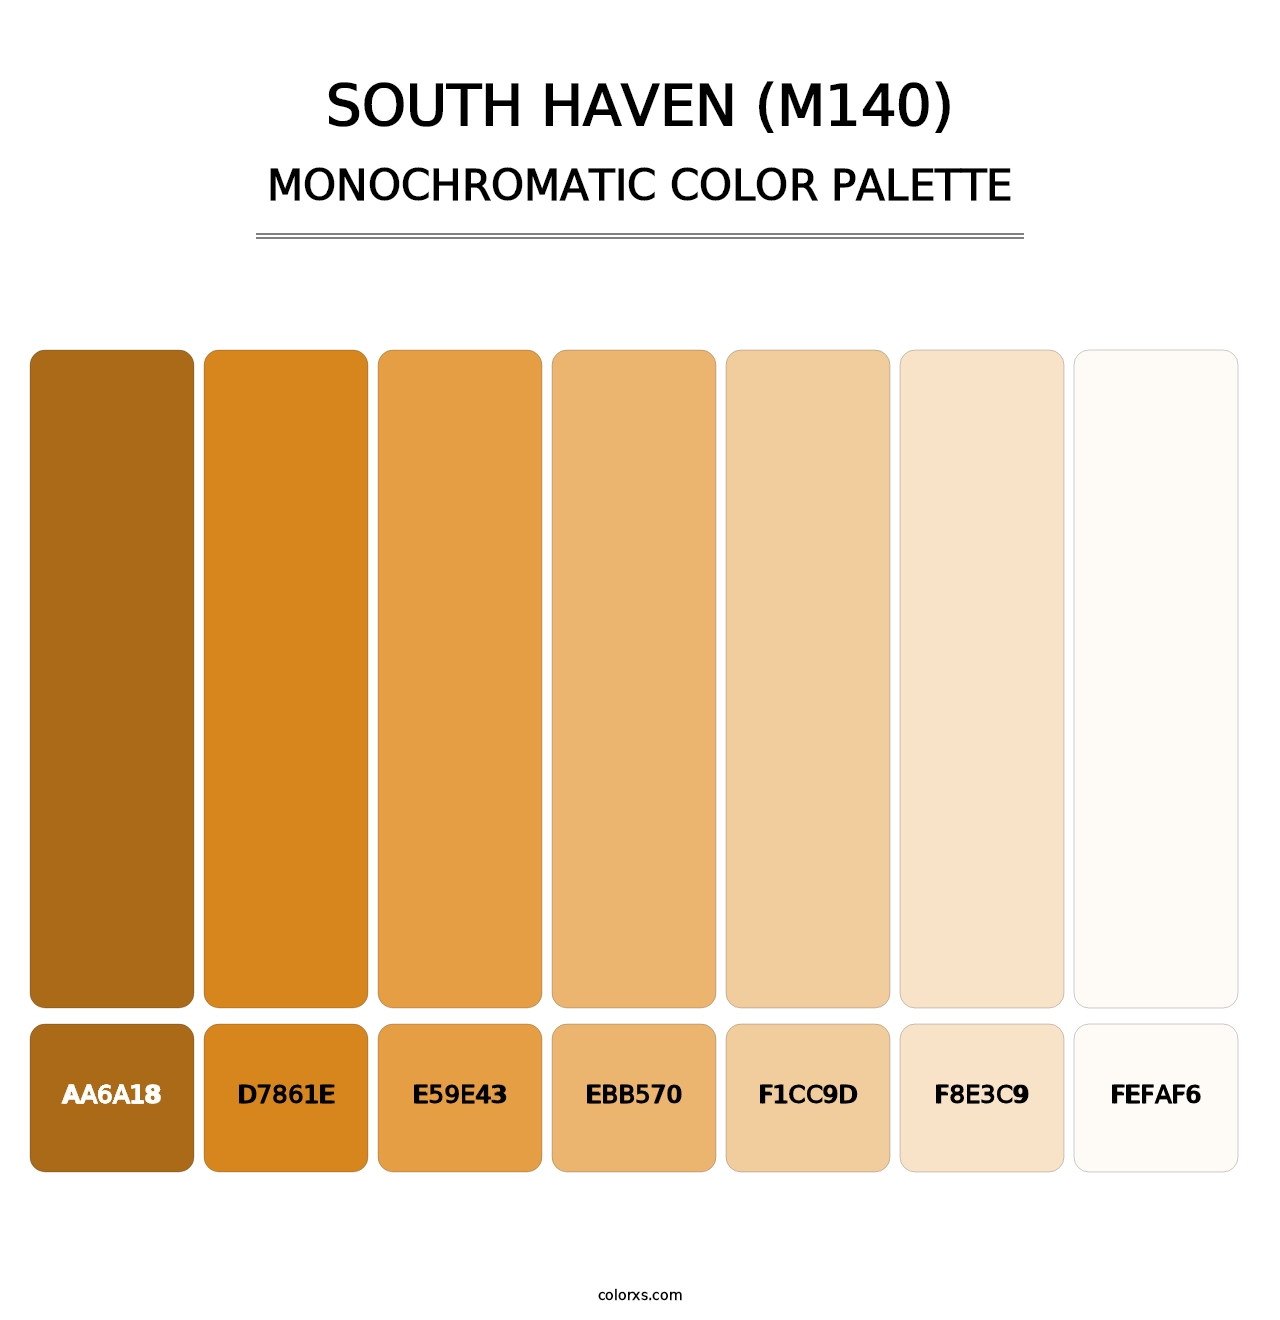 South Haven (M140) - Monochromatic Color Palette